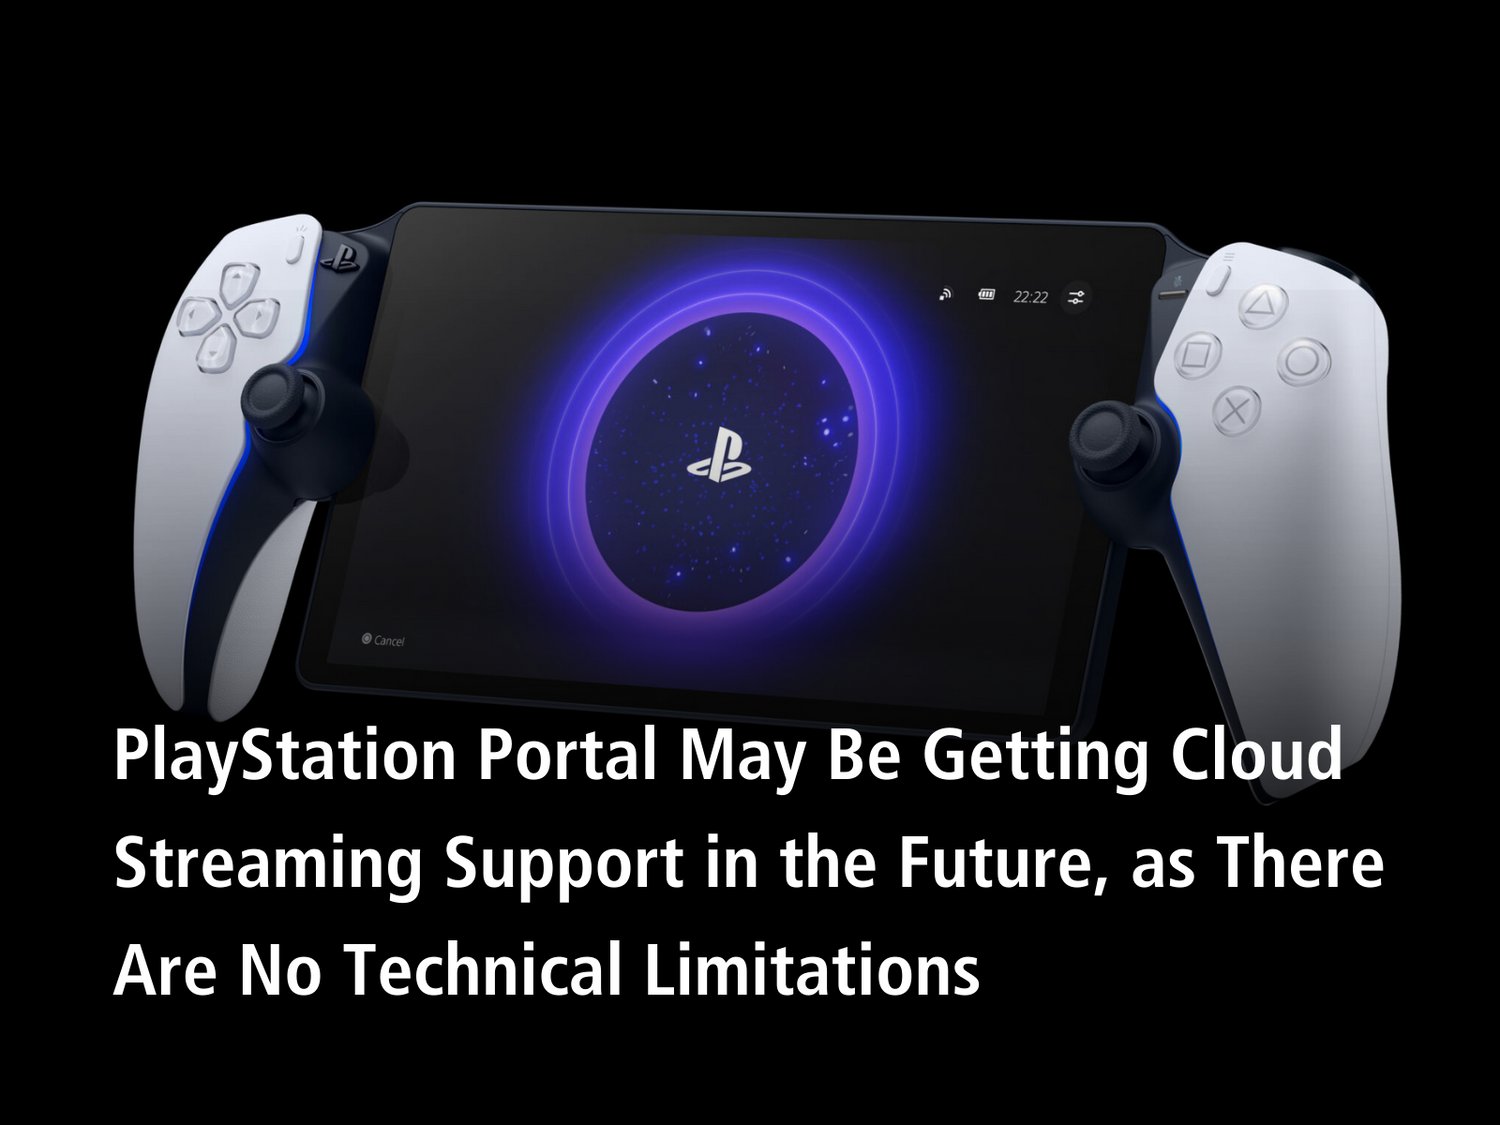 Really hope it flops. We deserve better: PlayStation Portal Gets